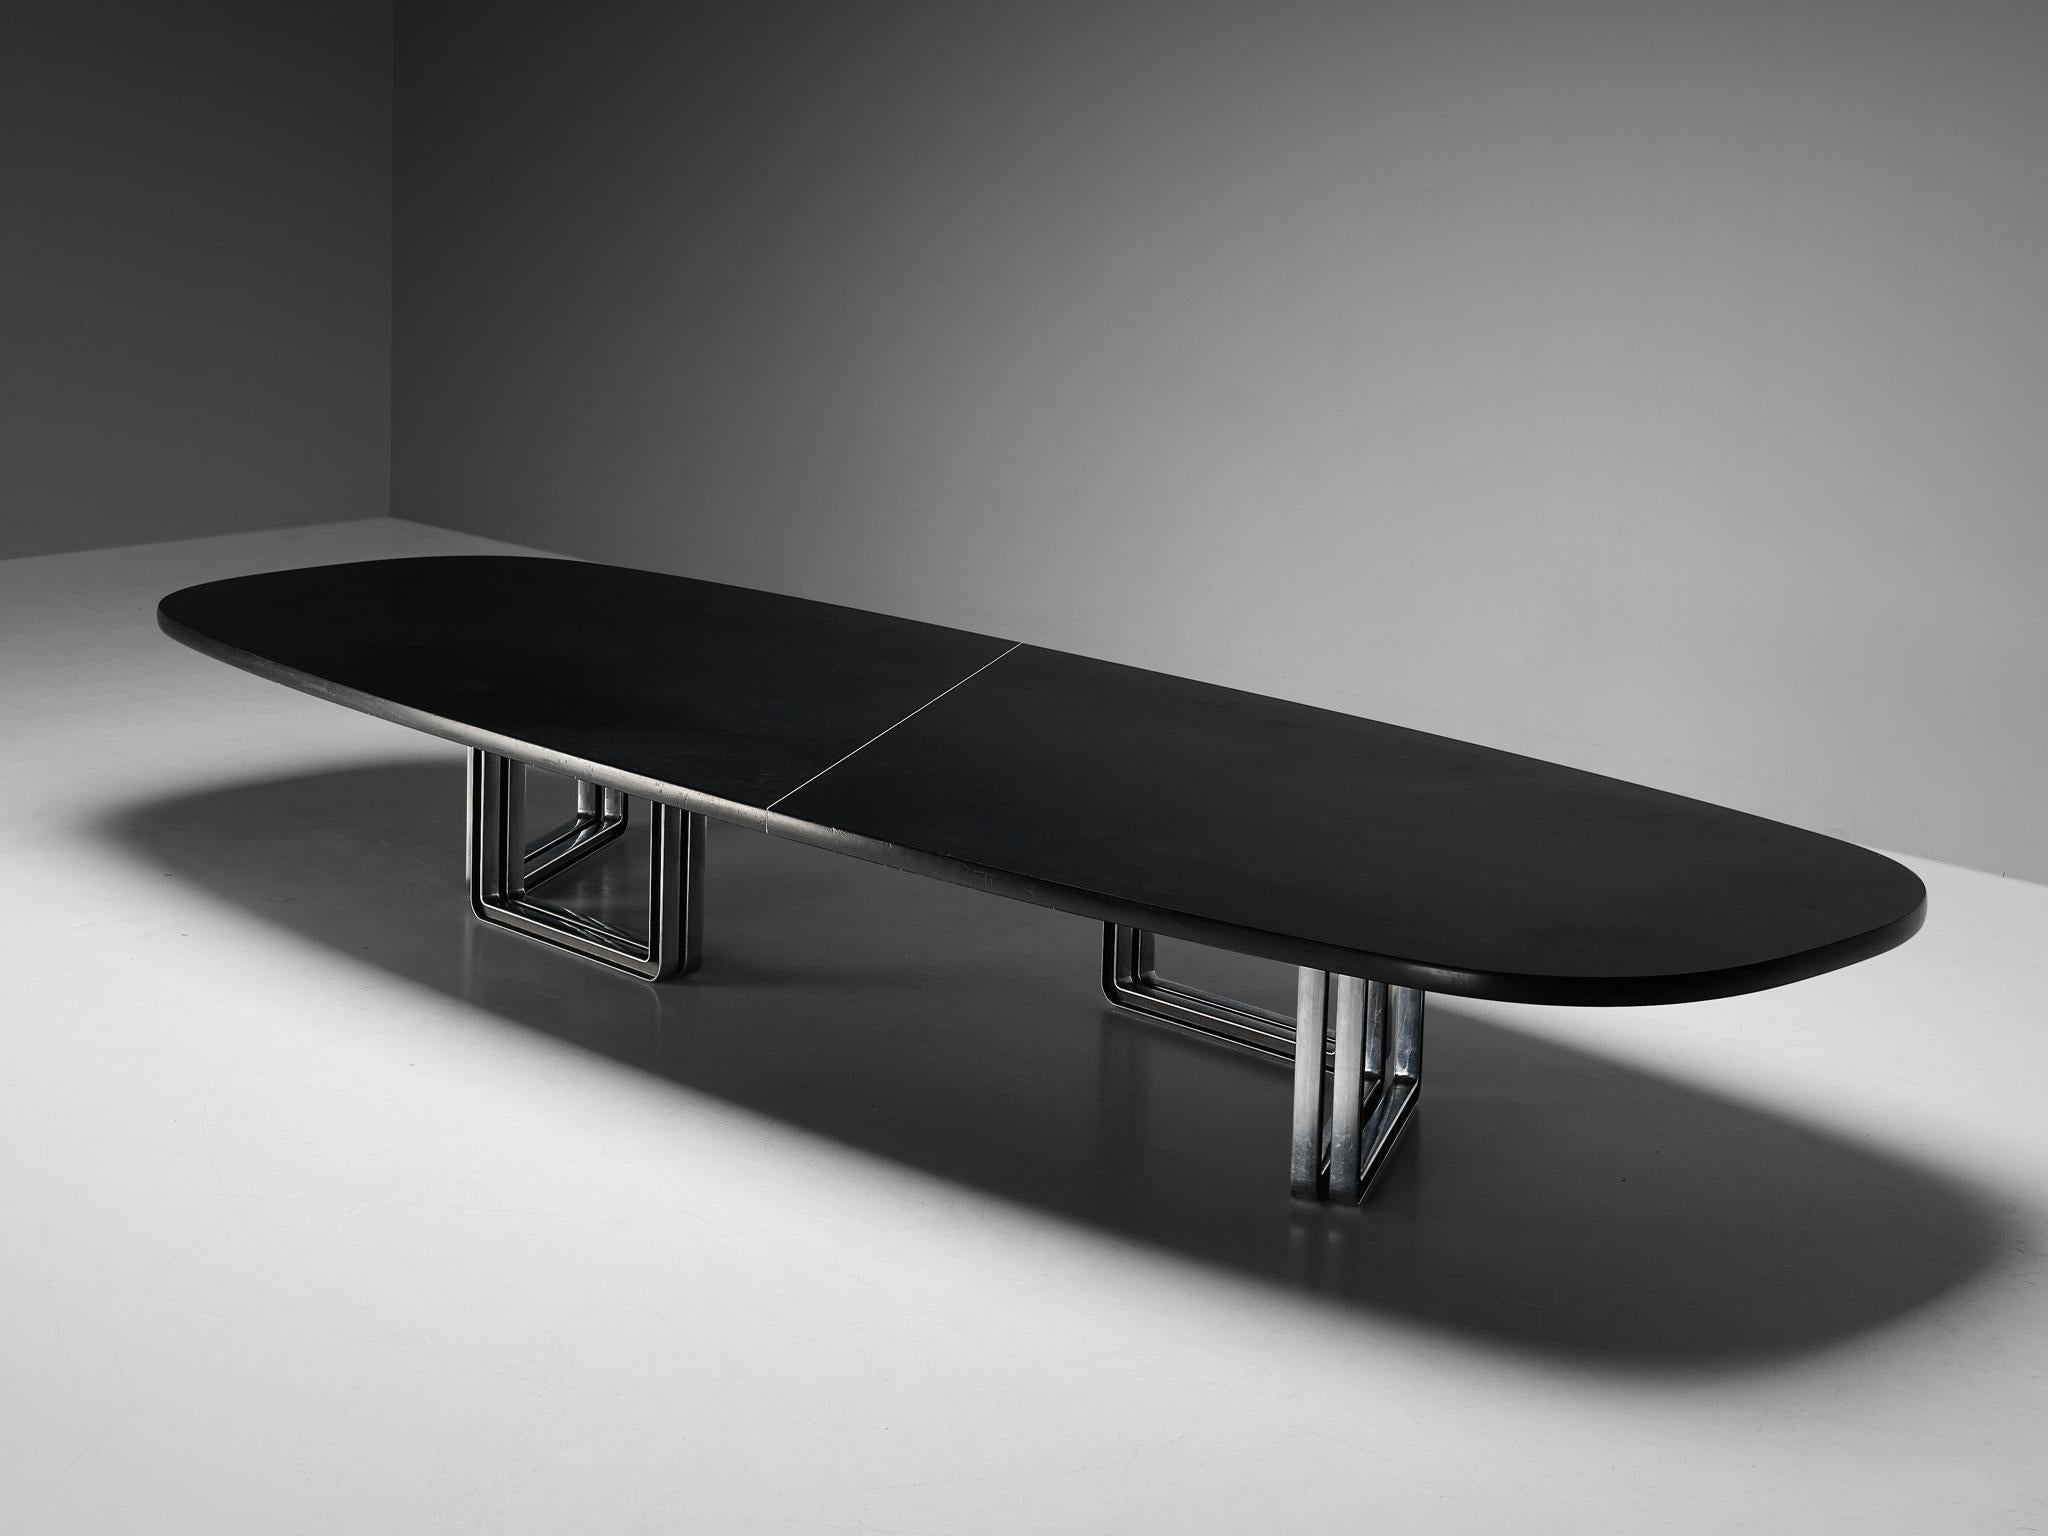 Centro Progetti Tecno, Konferenztisch Modell 'T335', lackiertes Holz, Aluminium, Italien, 1975-1978

Großer Konferenztisch mit einer schwarz lackierten Holzplatte, die eine unglaublich weiche Textur aufweist. Der Tisch besteht aus zwei Teilen, die